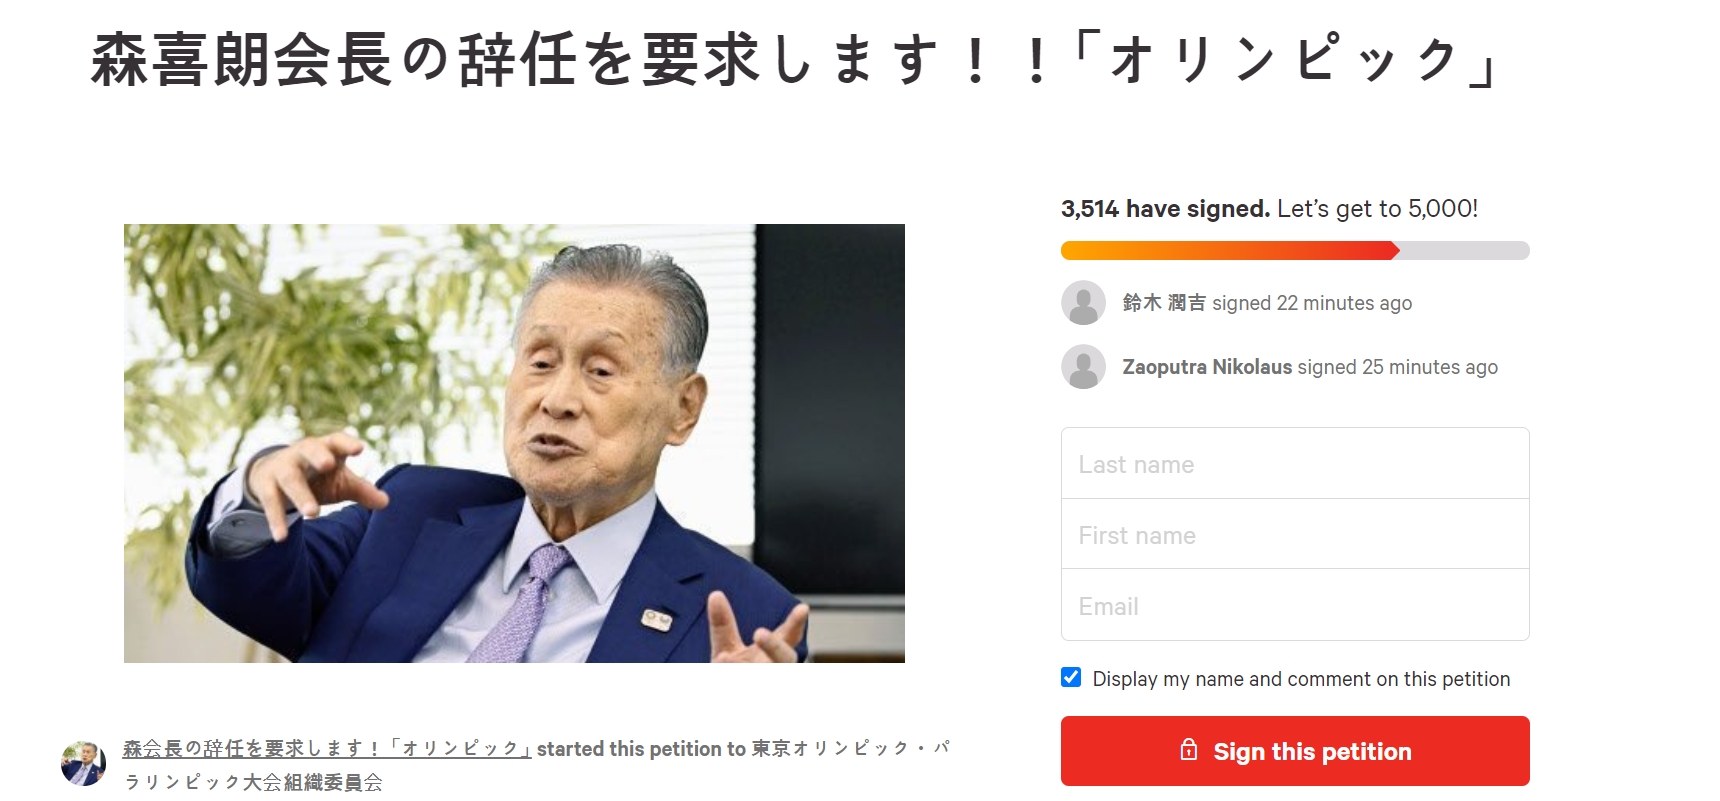 모리 도쿄 올림픽 조직위원장의 사임을 요구하는 서명운동